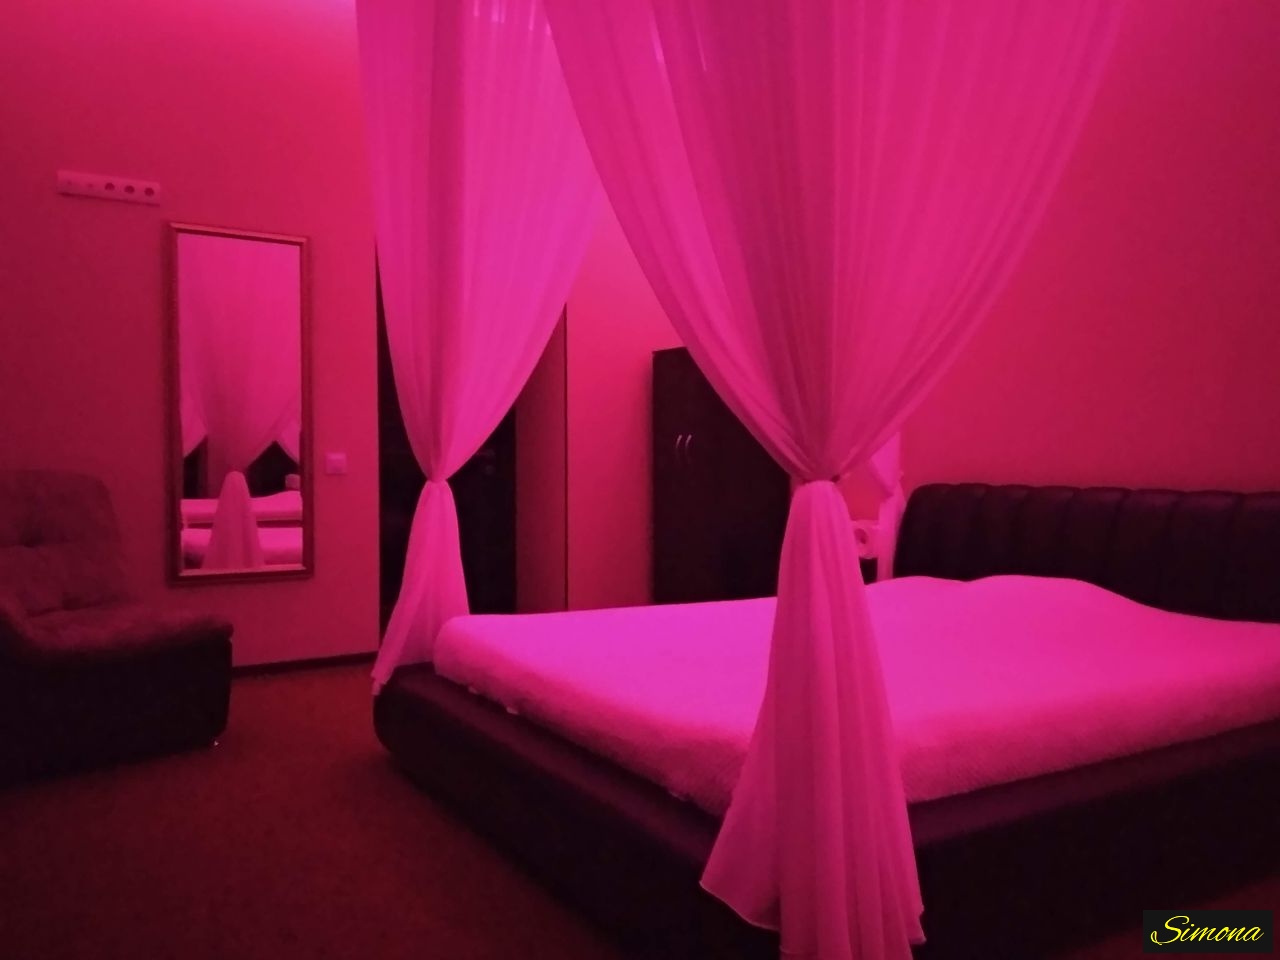 Purple room